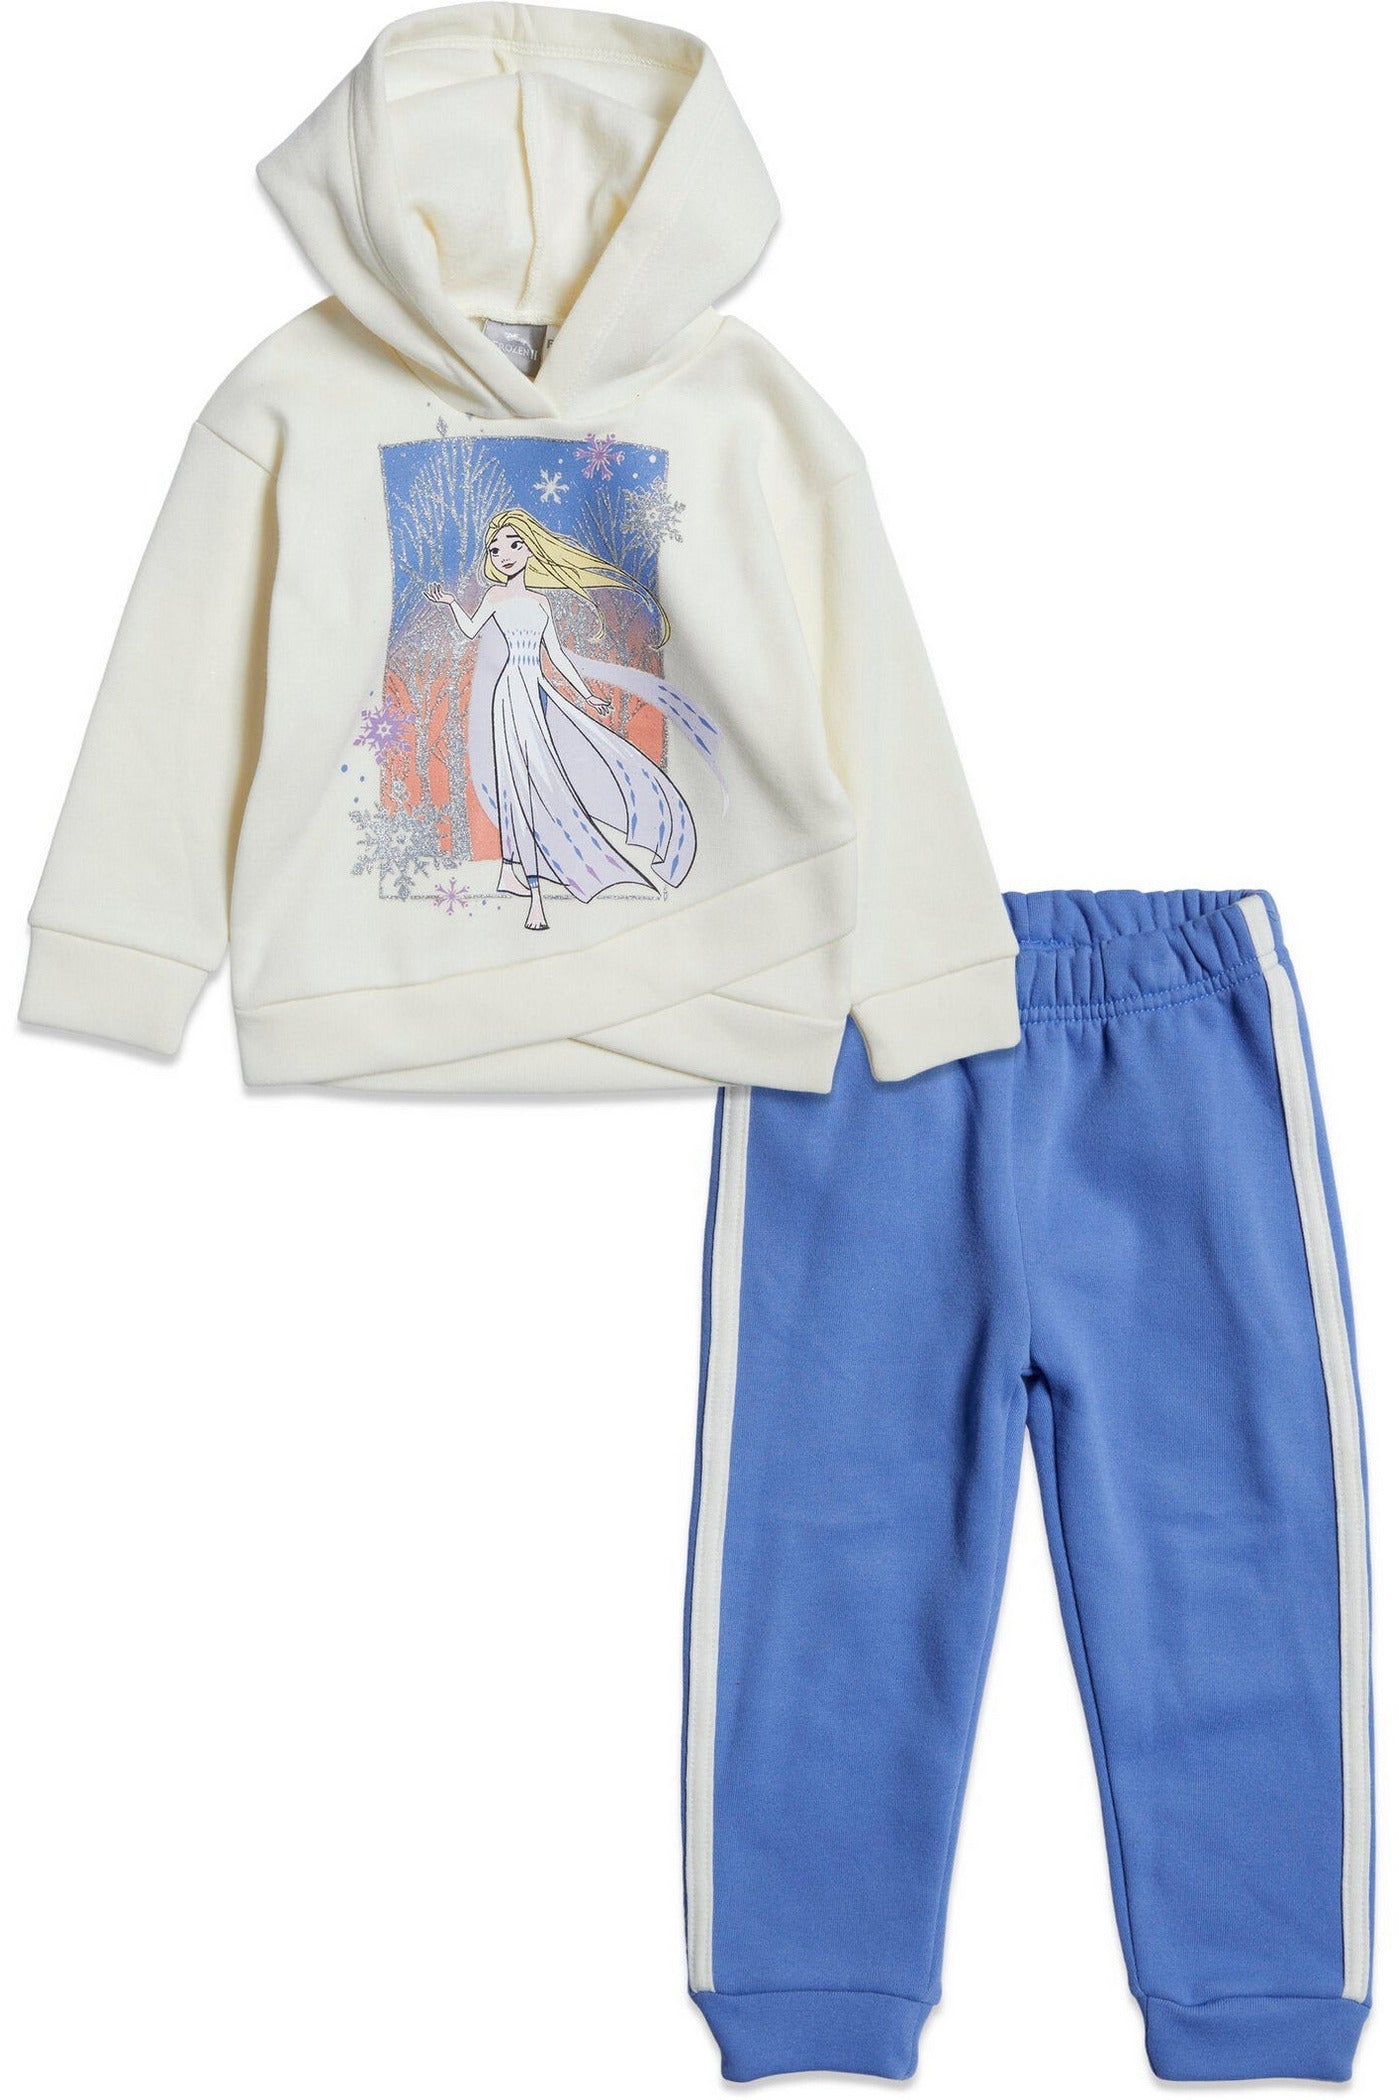 Queen Elsa Fleece Jogger Pullover Crossover Sudadera con capucha y conjunto de pantalones